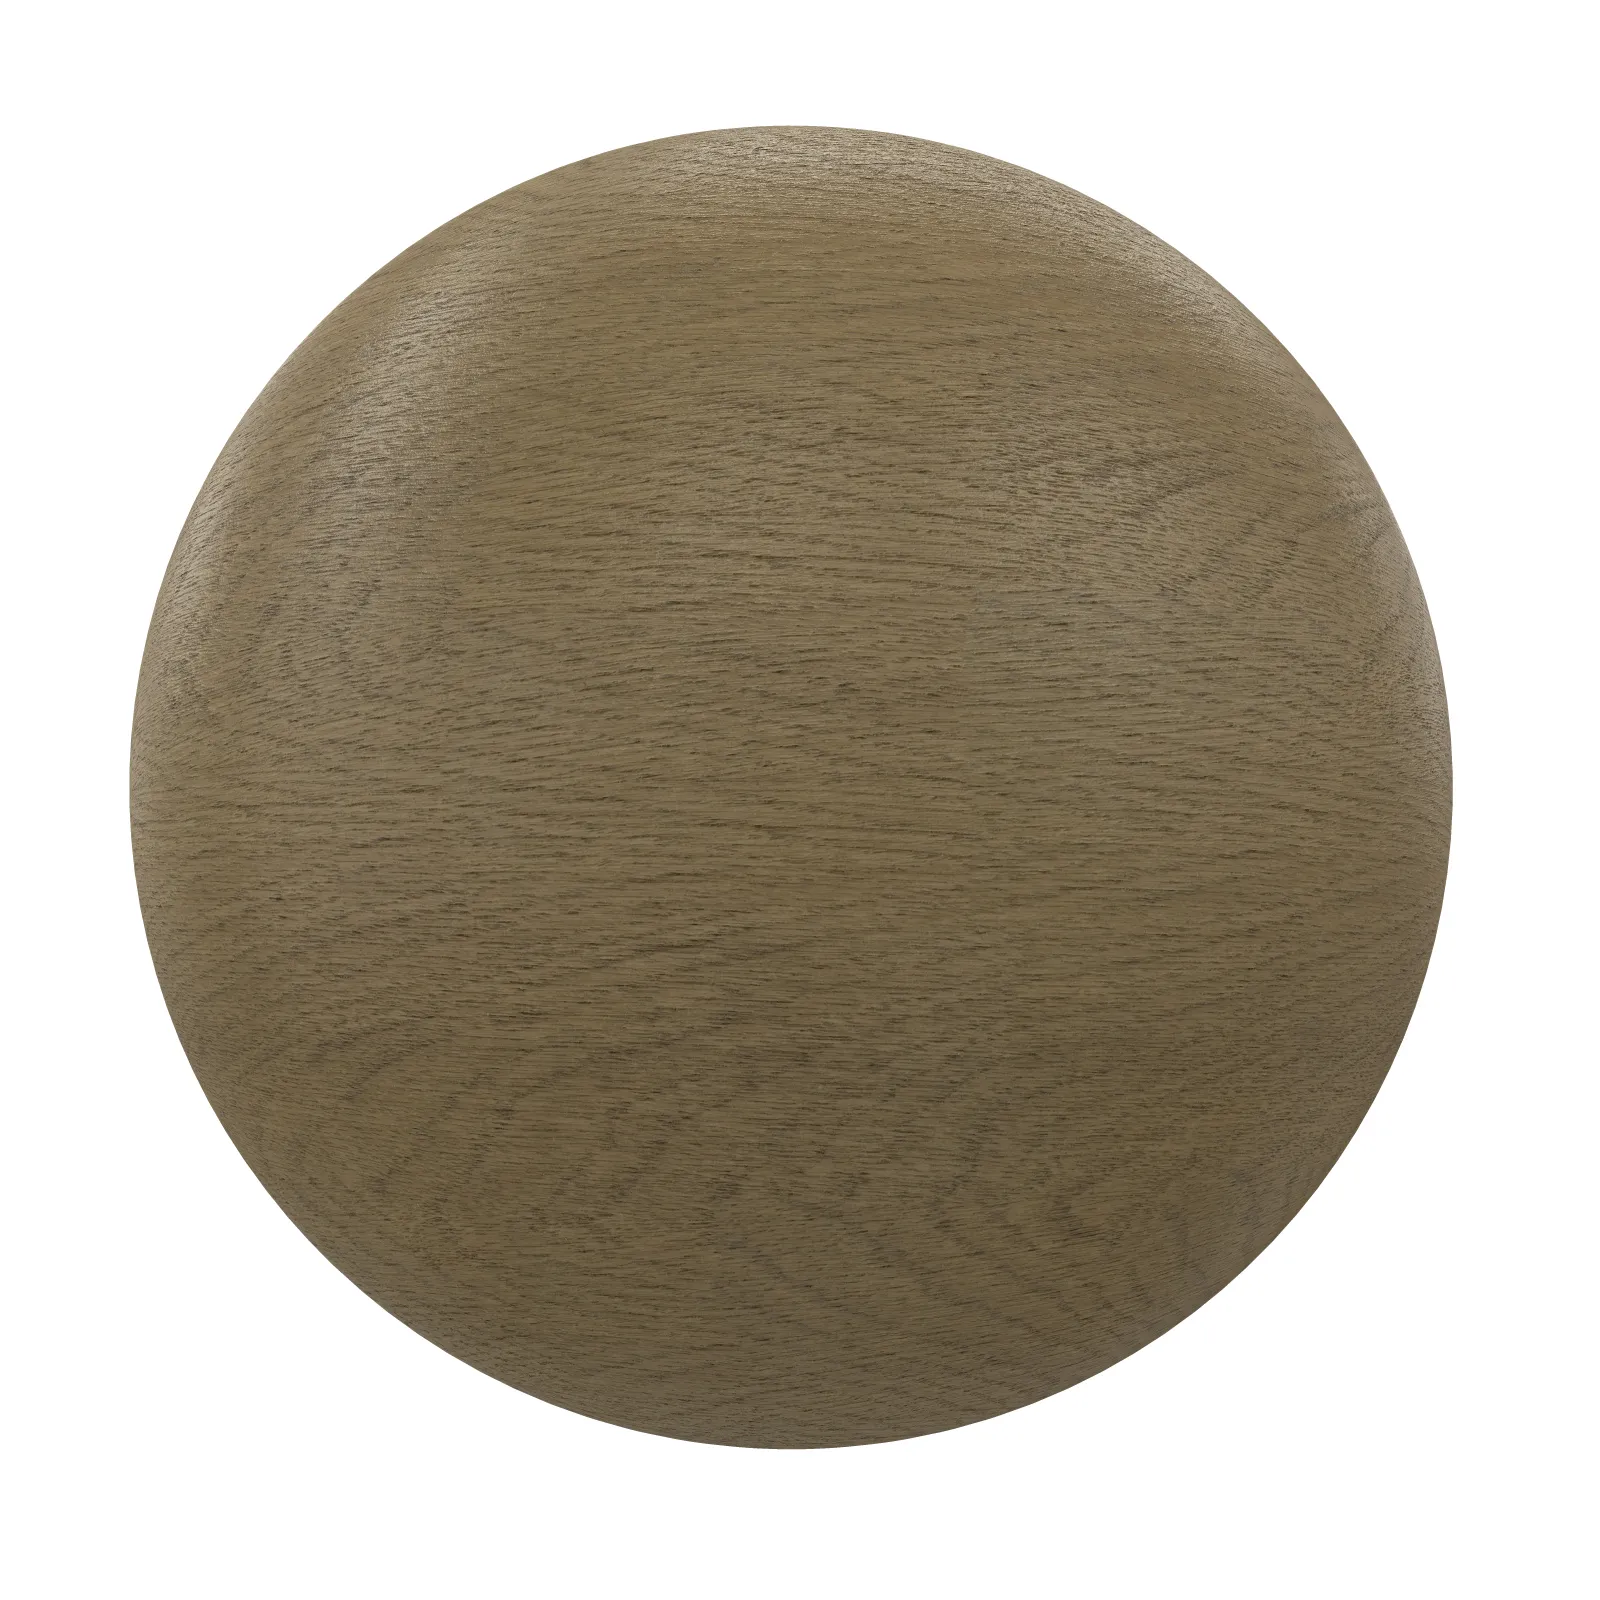 3ds Max Files – Texture – 8 – Wood Texture – 93 – Wood Texture by Minh Nguyenzip